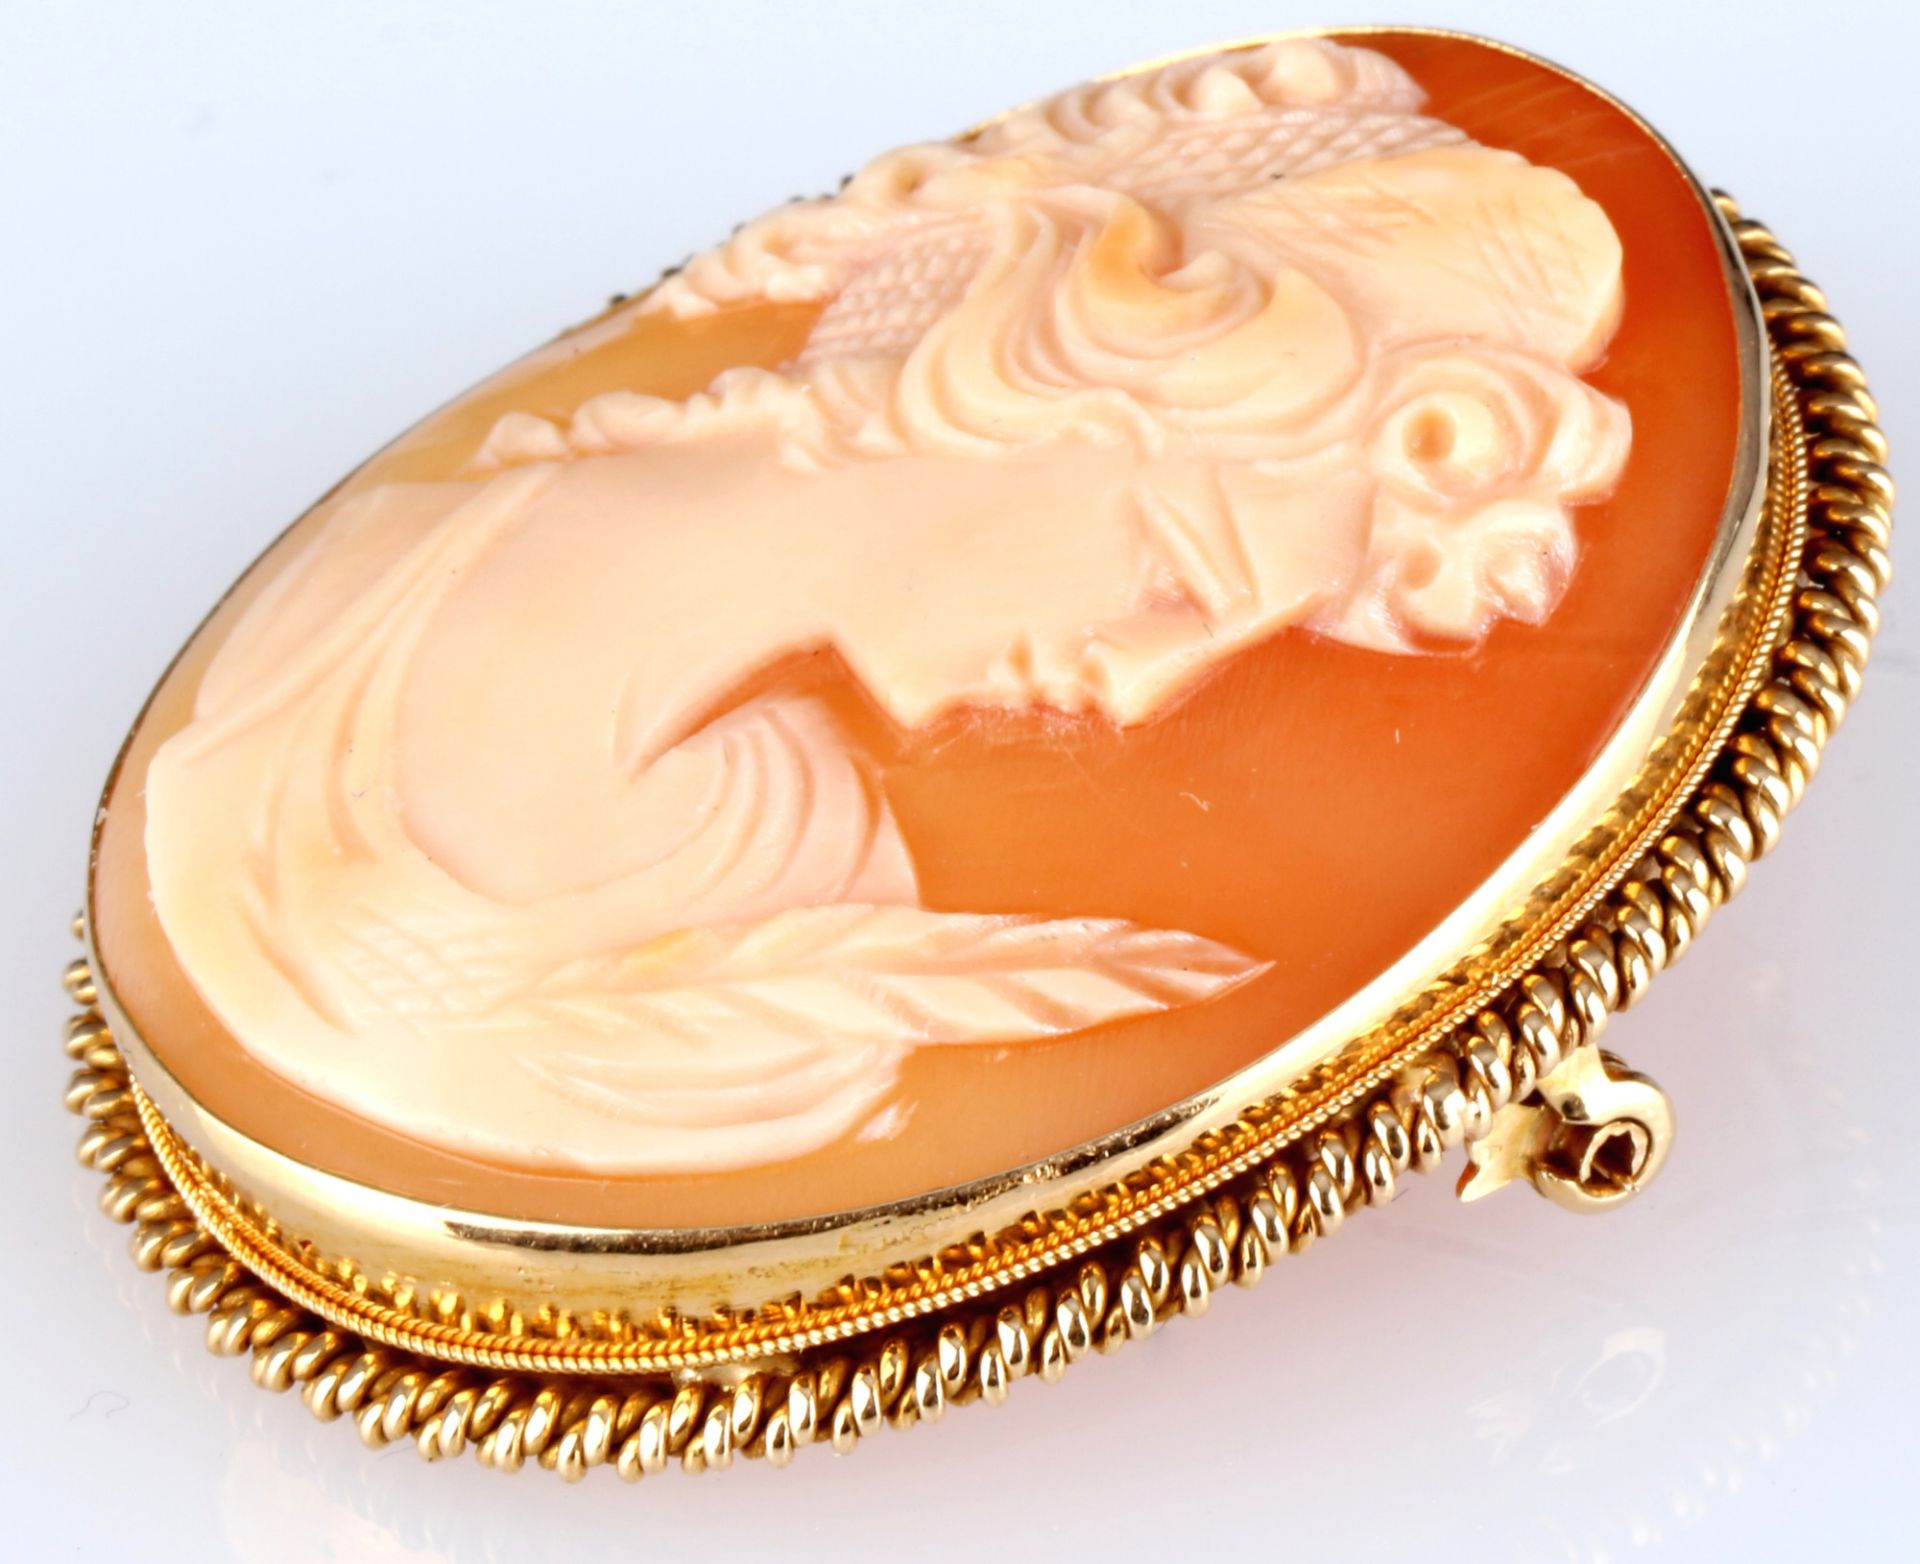 750 gold shell cameo pendant / brooch, 18K Gold Muschelkamee Anhänger / Brosche, - Image 2 of 4